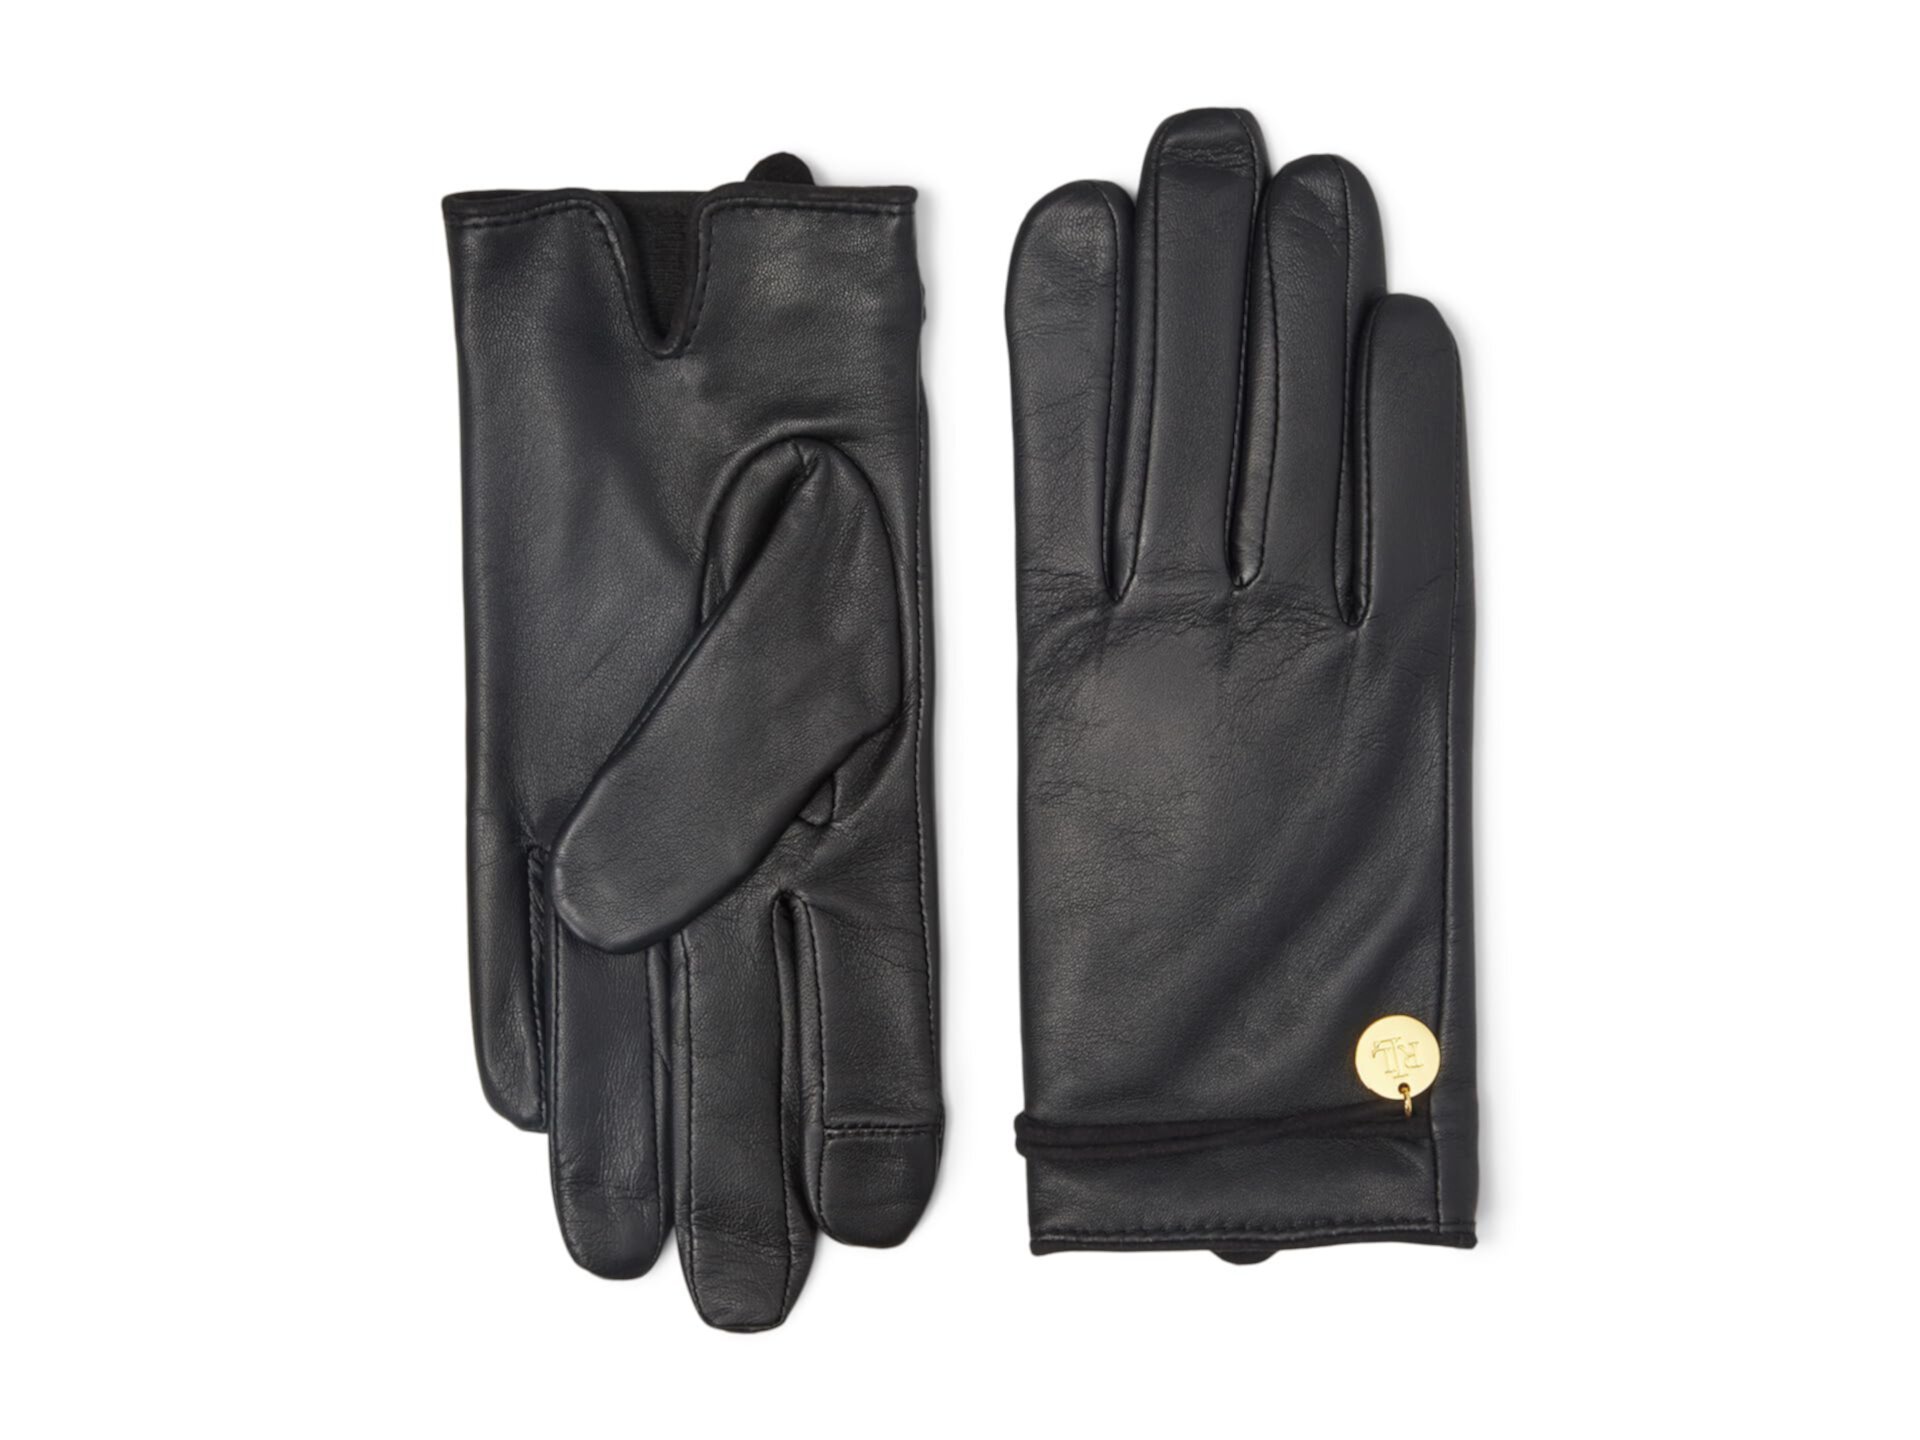 Очаровательные перчатки с замшевой отделкой LAUREN Ralph Lauren